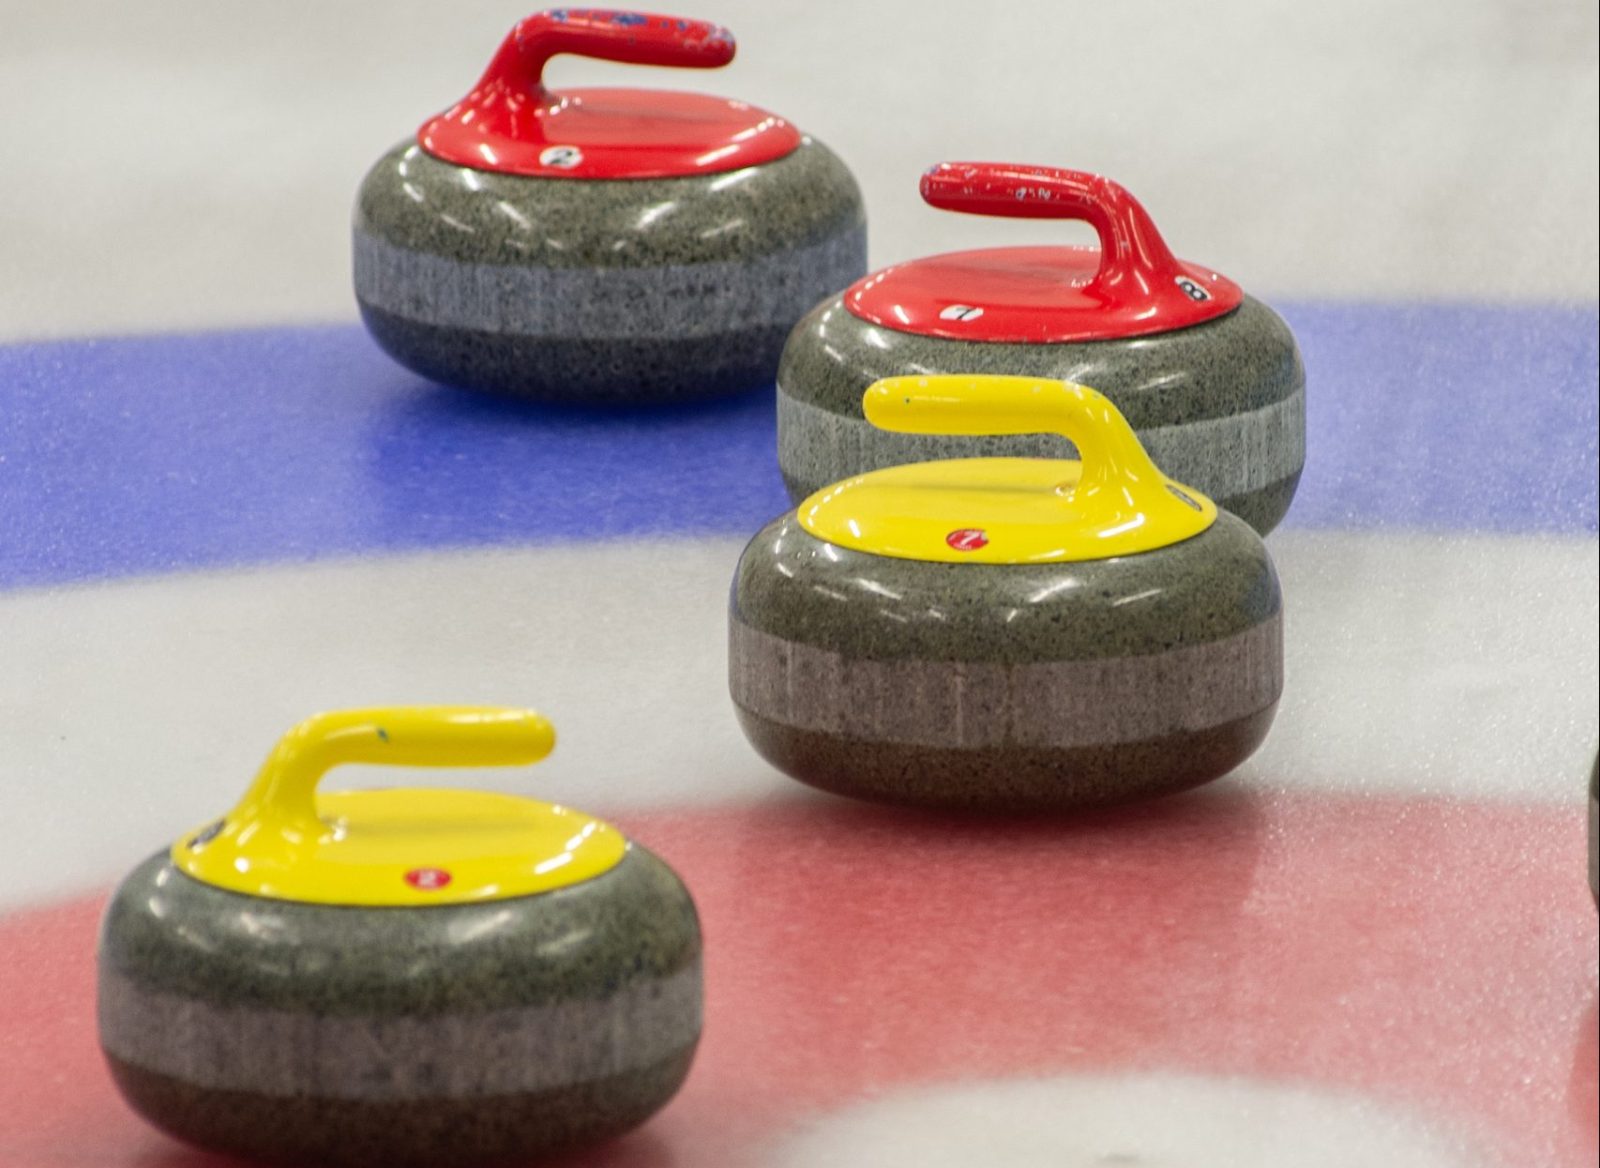 Championnat provincial de curling : bénévoles recherchés